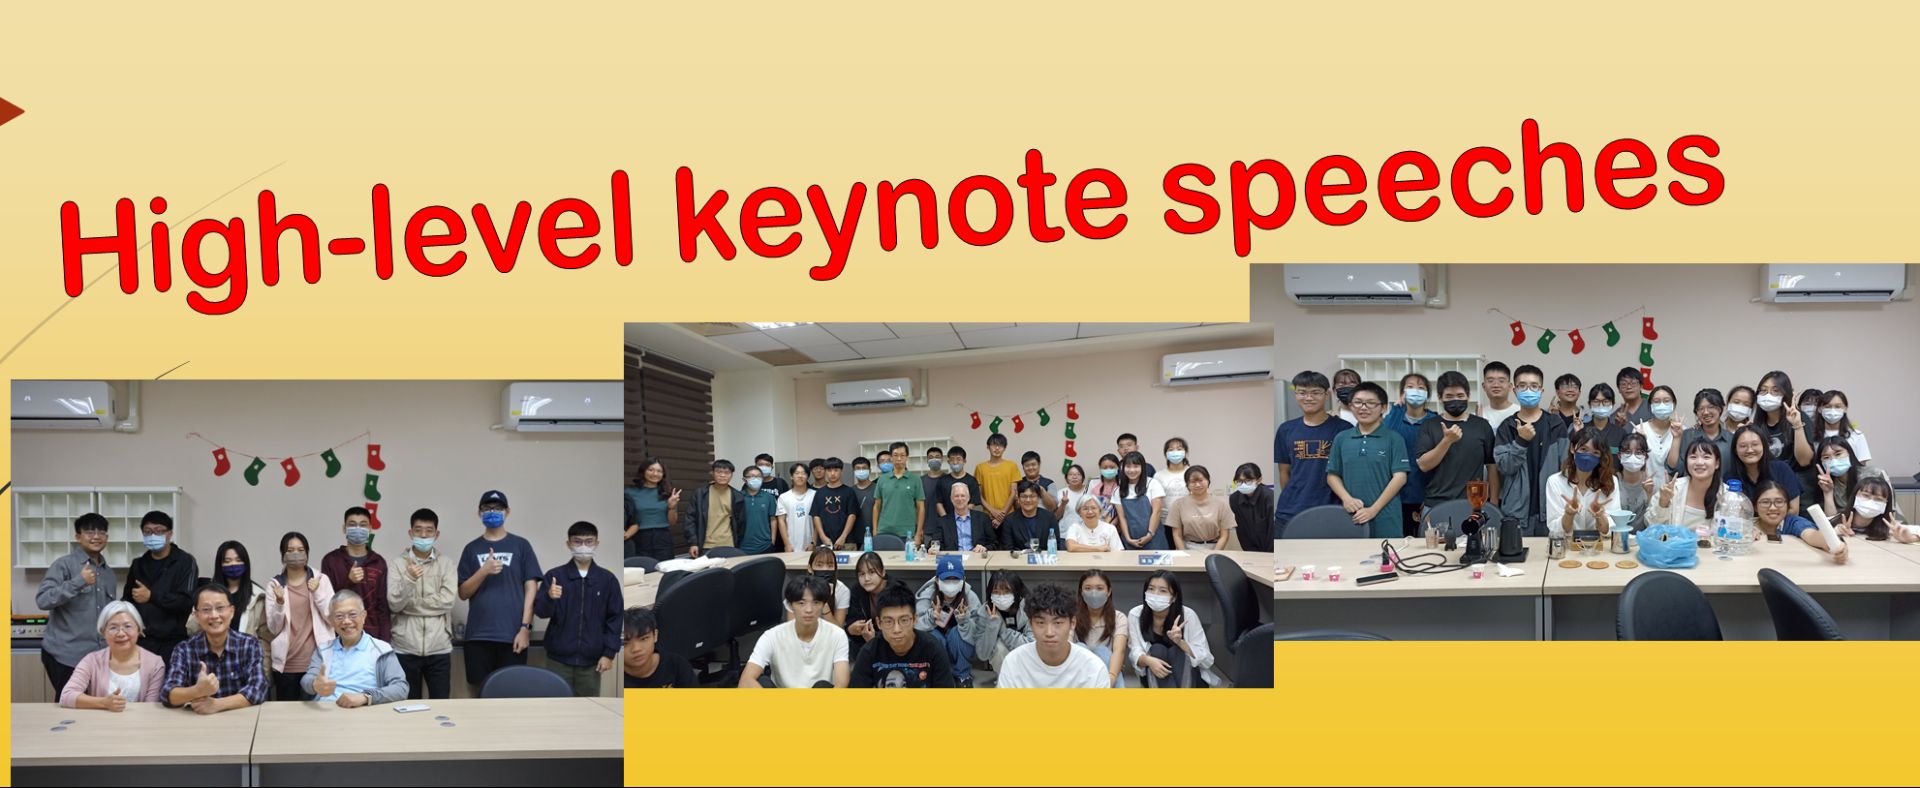 Keynote speech